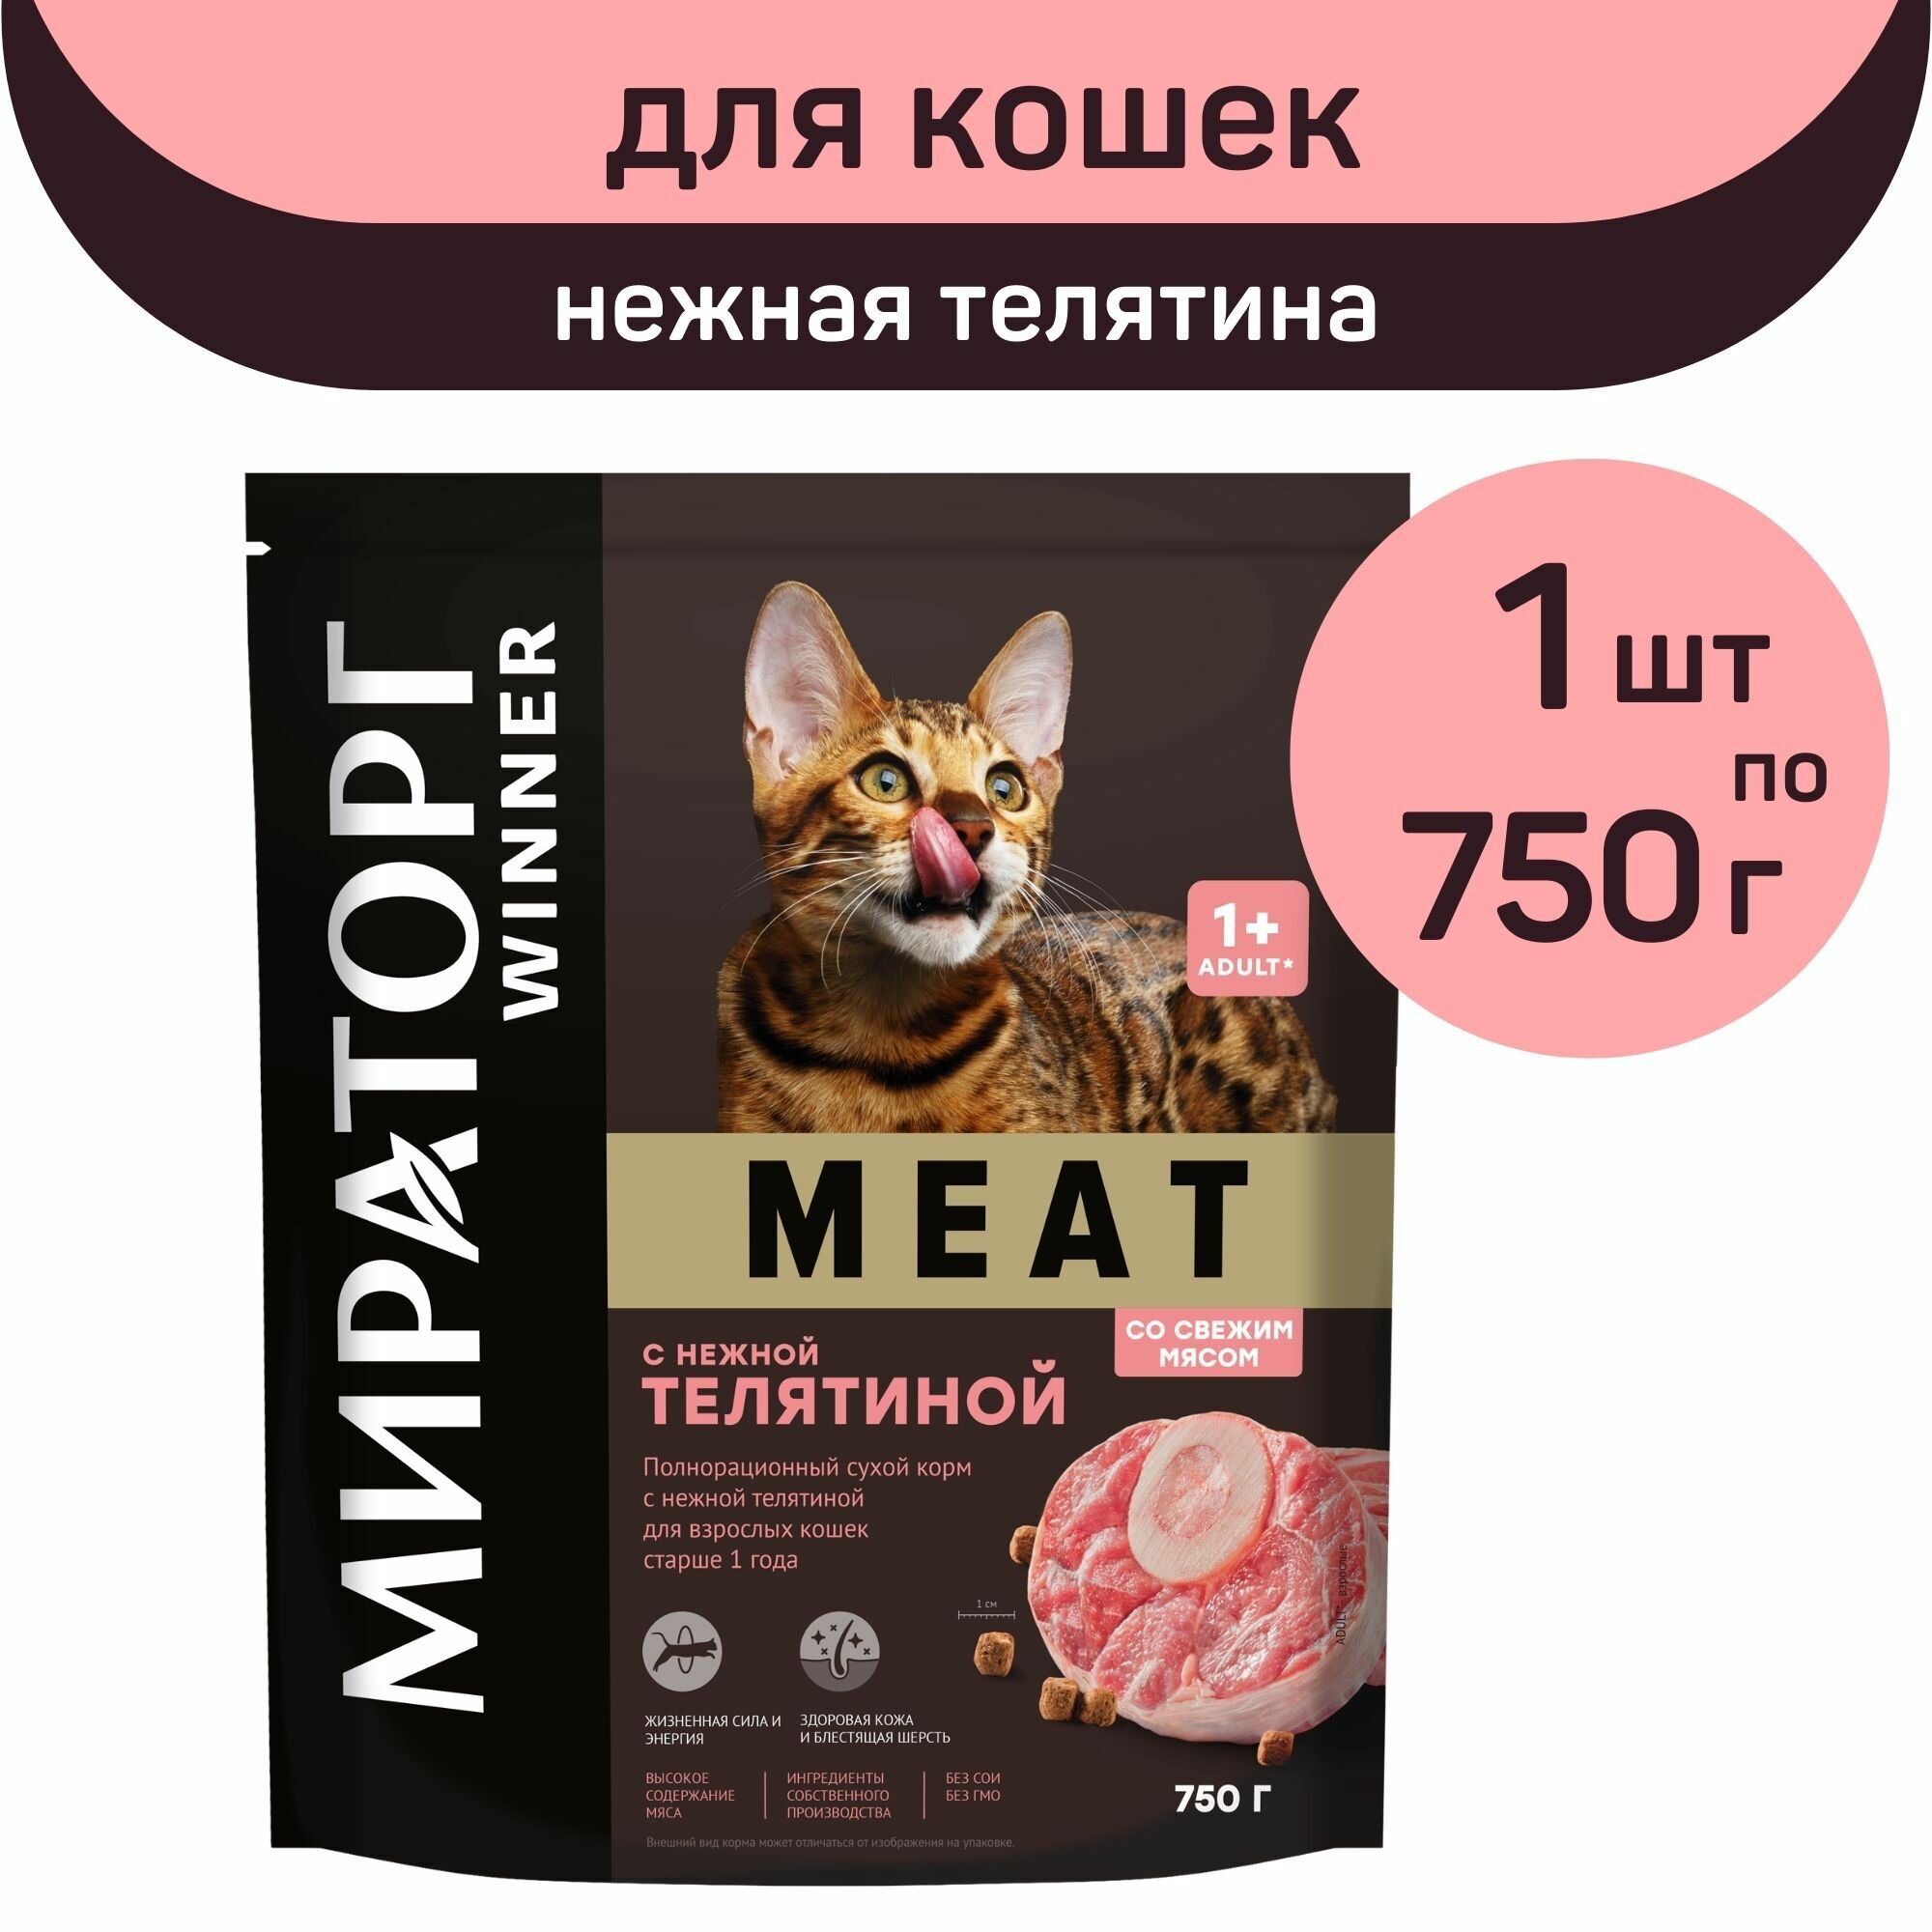 Полнорационный сухой корм Мираторг MEAT, нежная телятина, 1 упаковка х 750 г, для взрослых кошек, старше 1 года